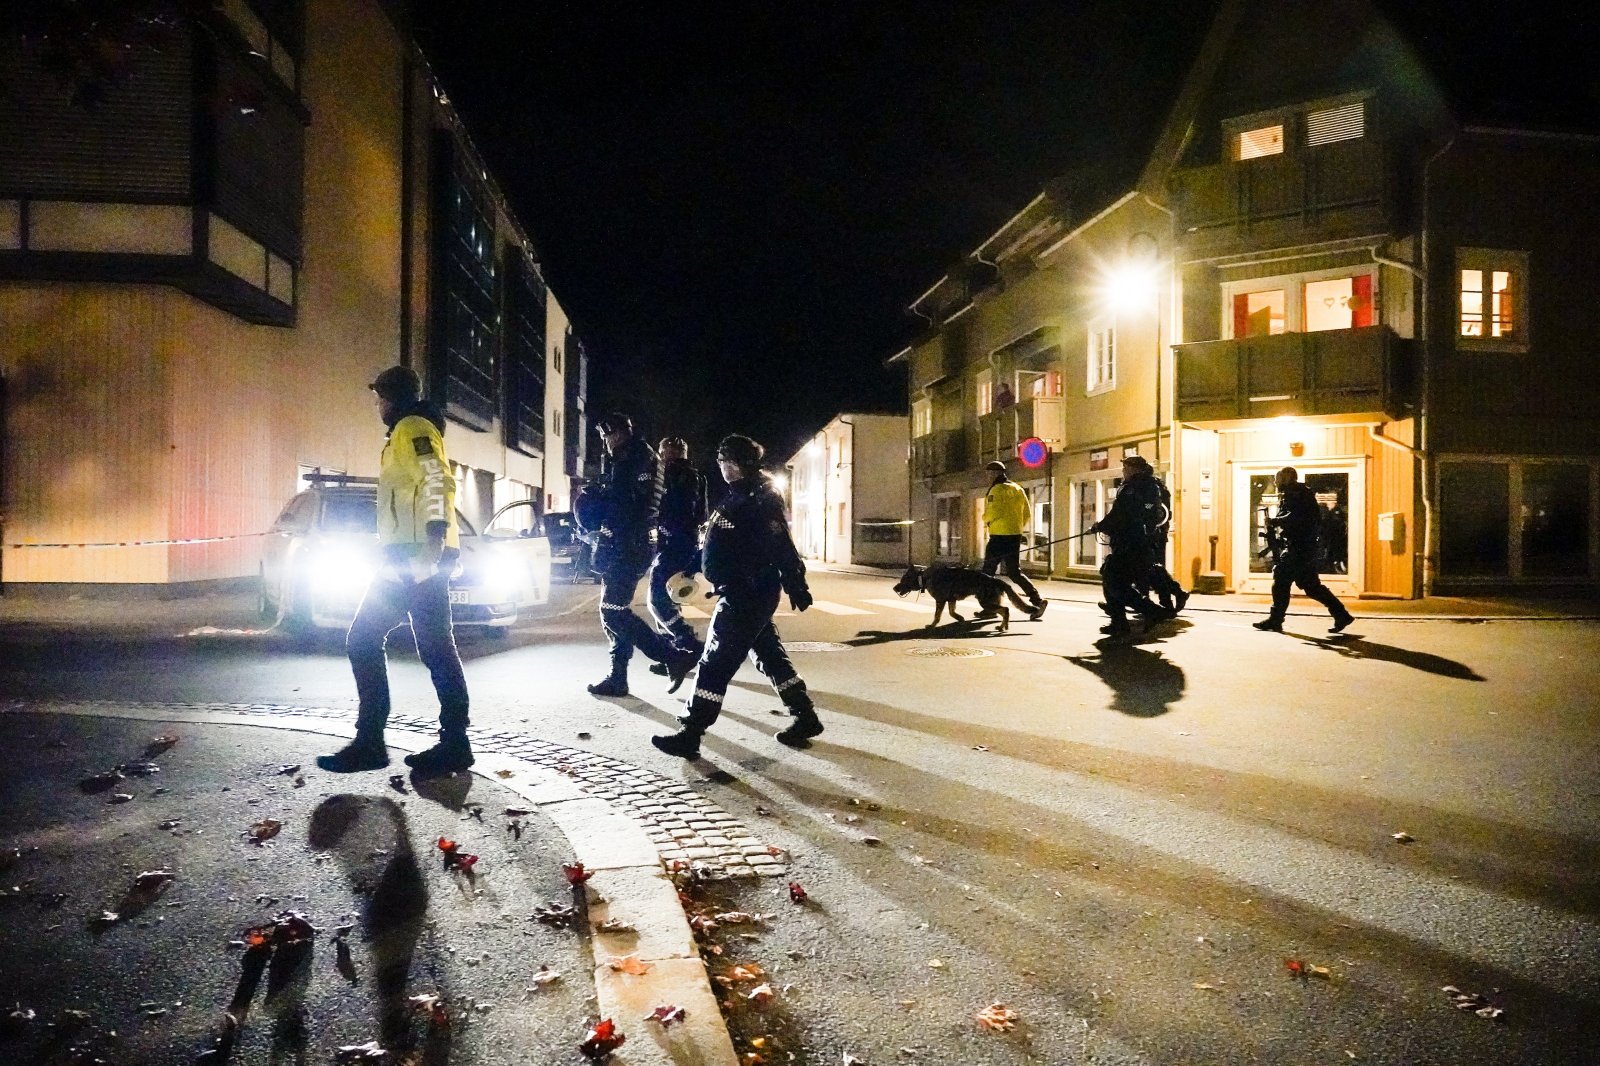 Blodig angrep i Norge: angriperen begynte å skyte bue mot folk